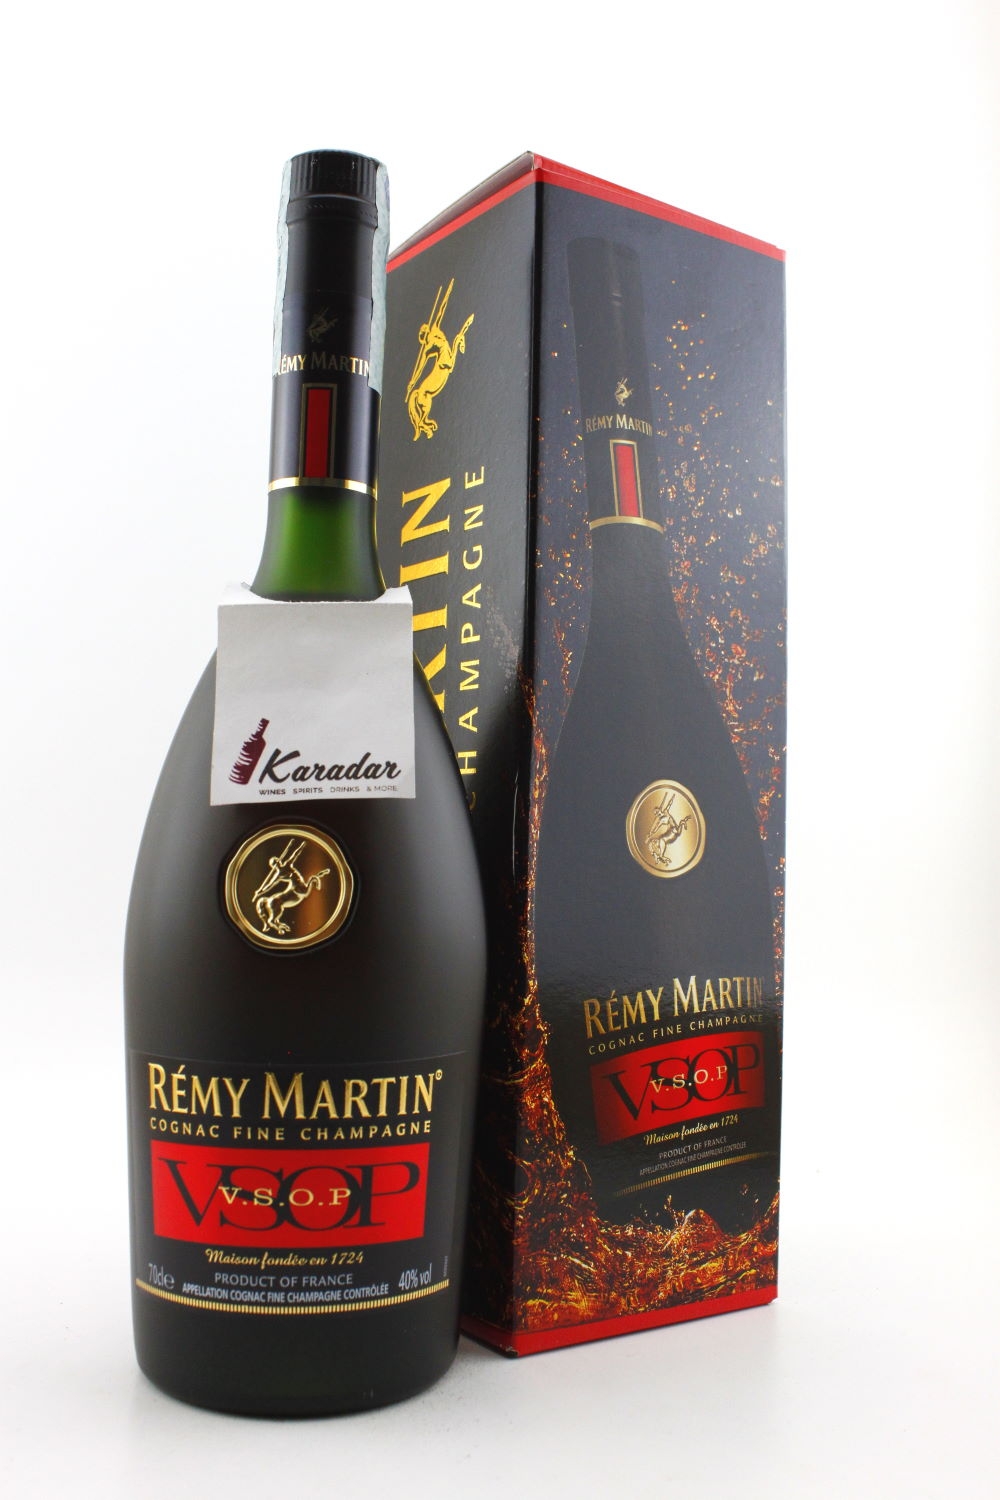 Remy Martin Cognac Fine Champagne V.S.O.P. 40% vol. Cognac | Karada...